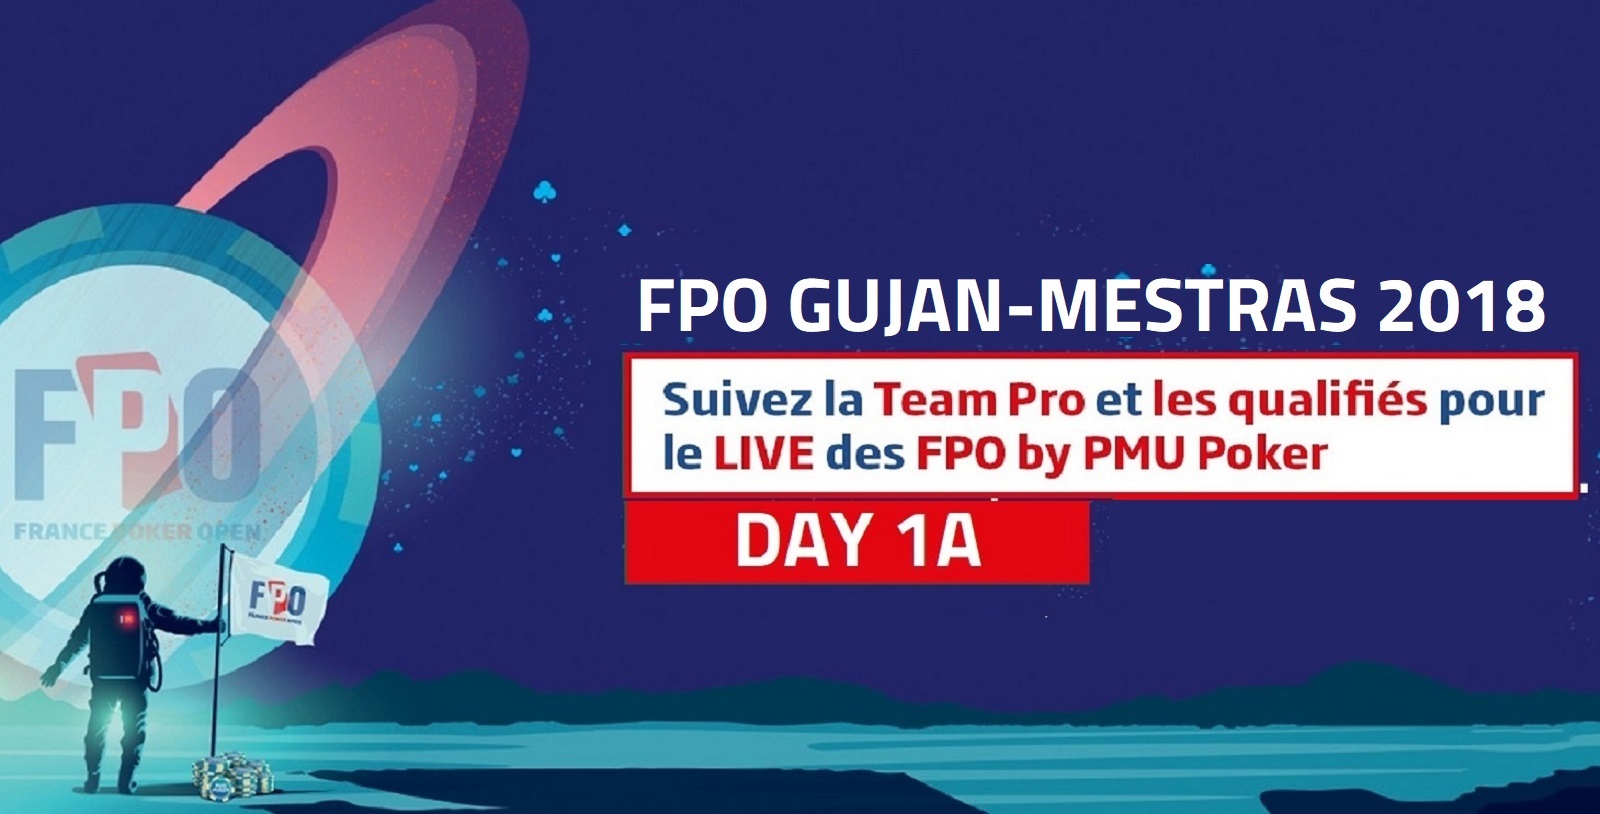 FPO Gujan: Retrouvez l’intégralité du coverage Day 1A ici!